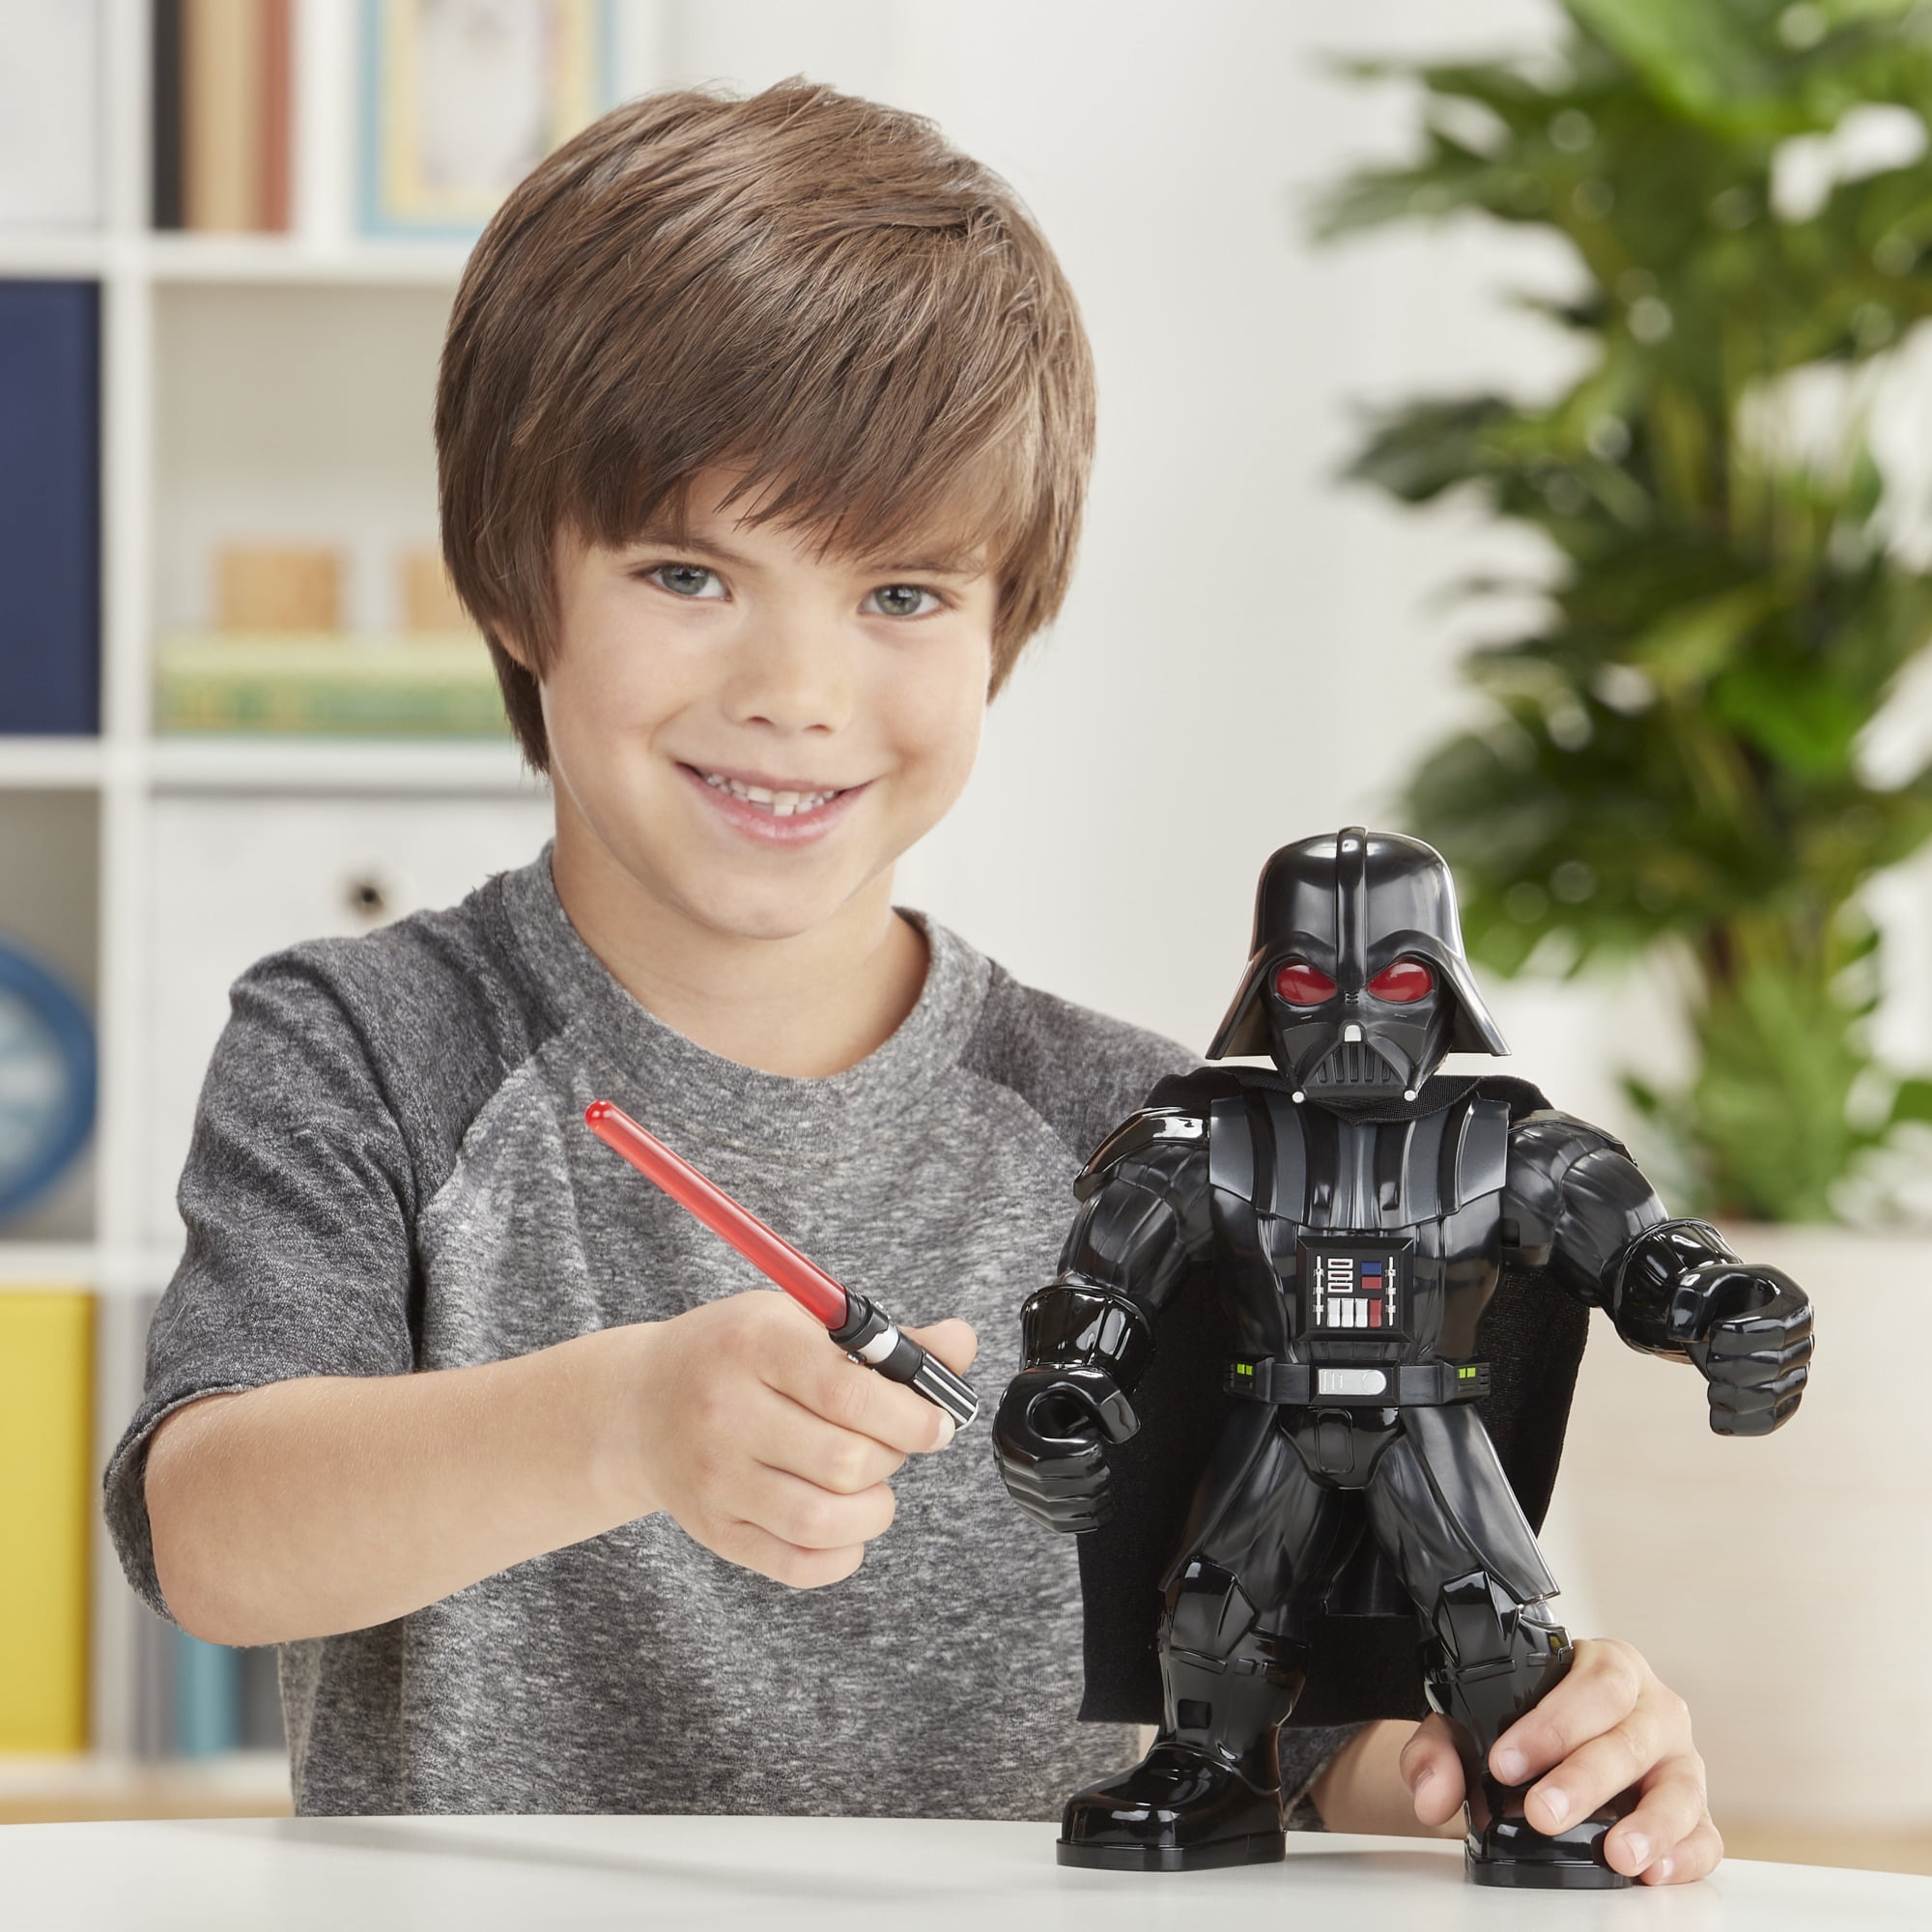 Star Wars Episode 1 R2d2 Glue Stick Darth Vader Lucasfilms Toy for sale online 